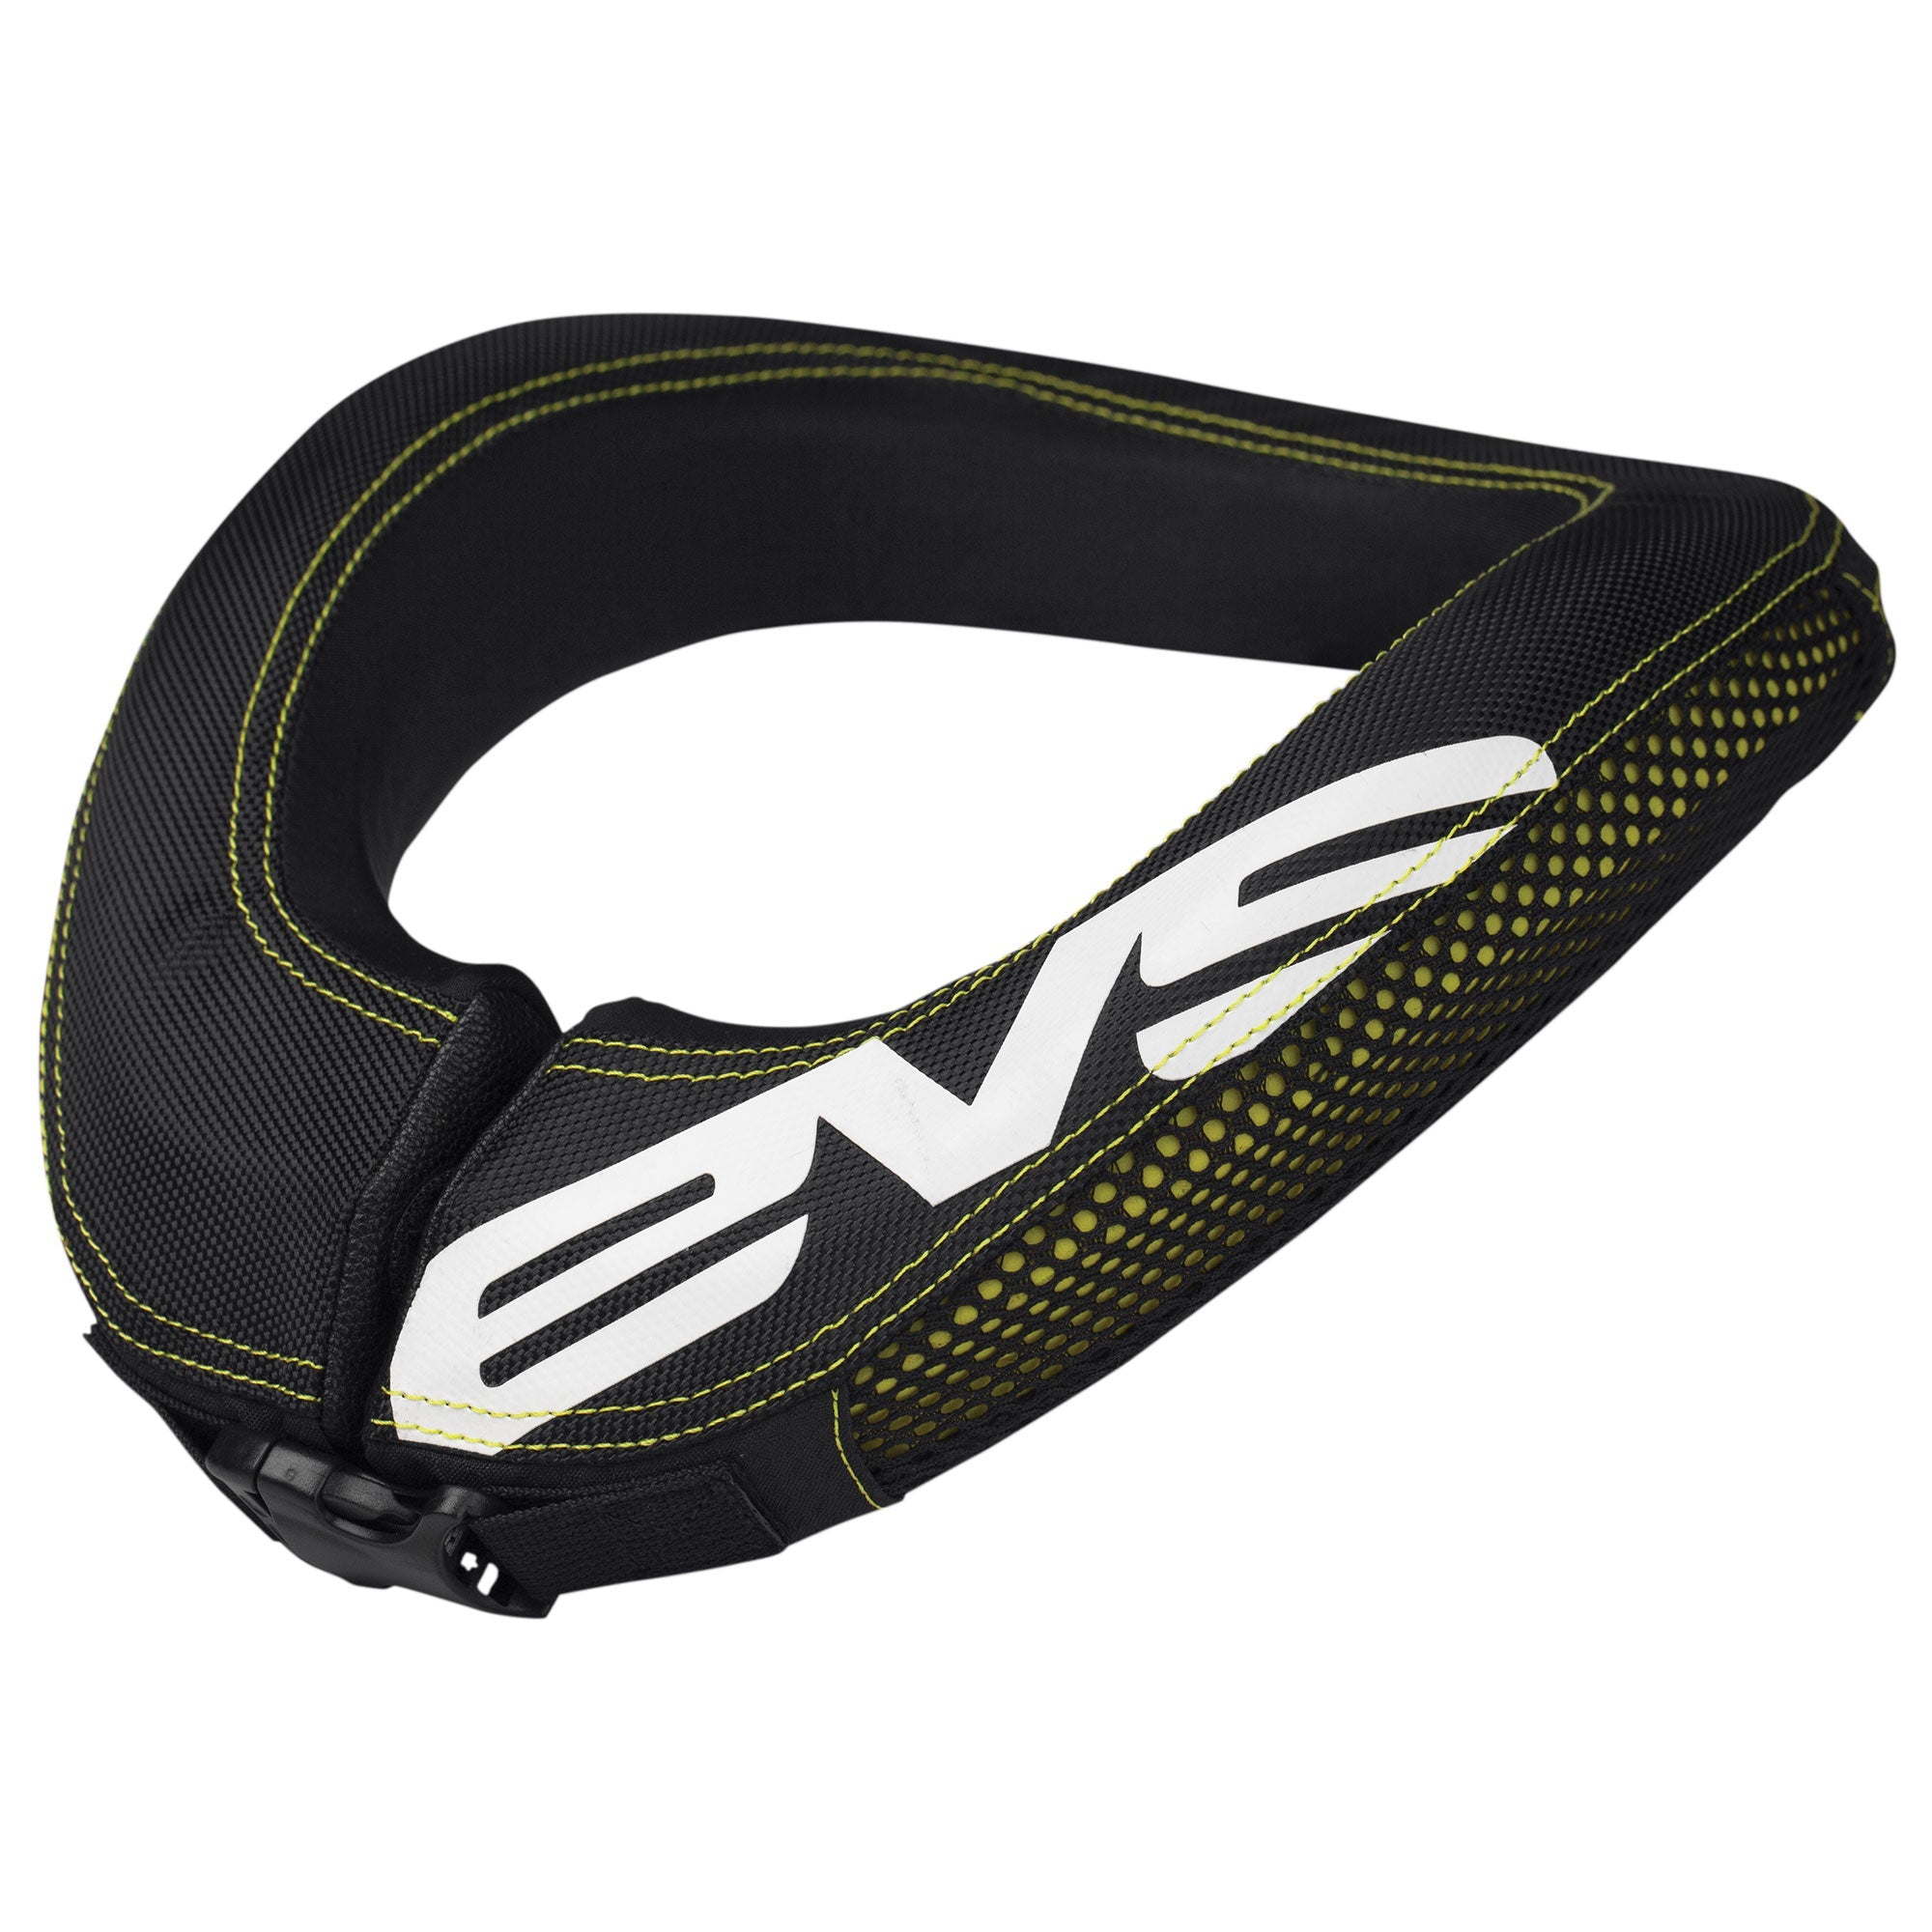 EVS Sports RC Evolution Race Collar System Neck Brace - Reviews,  Comparisons, Specs - Neck Braces - Vital MTB